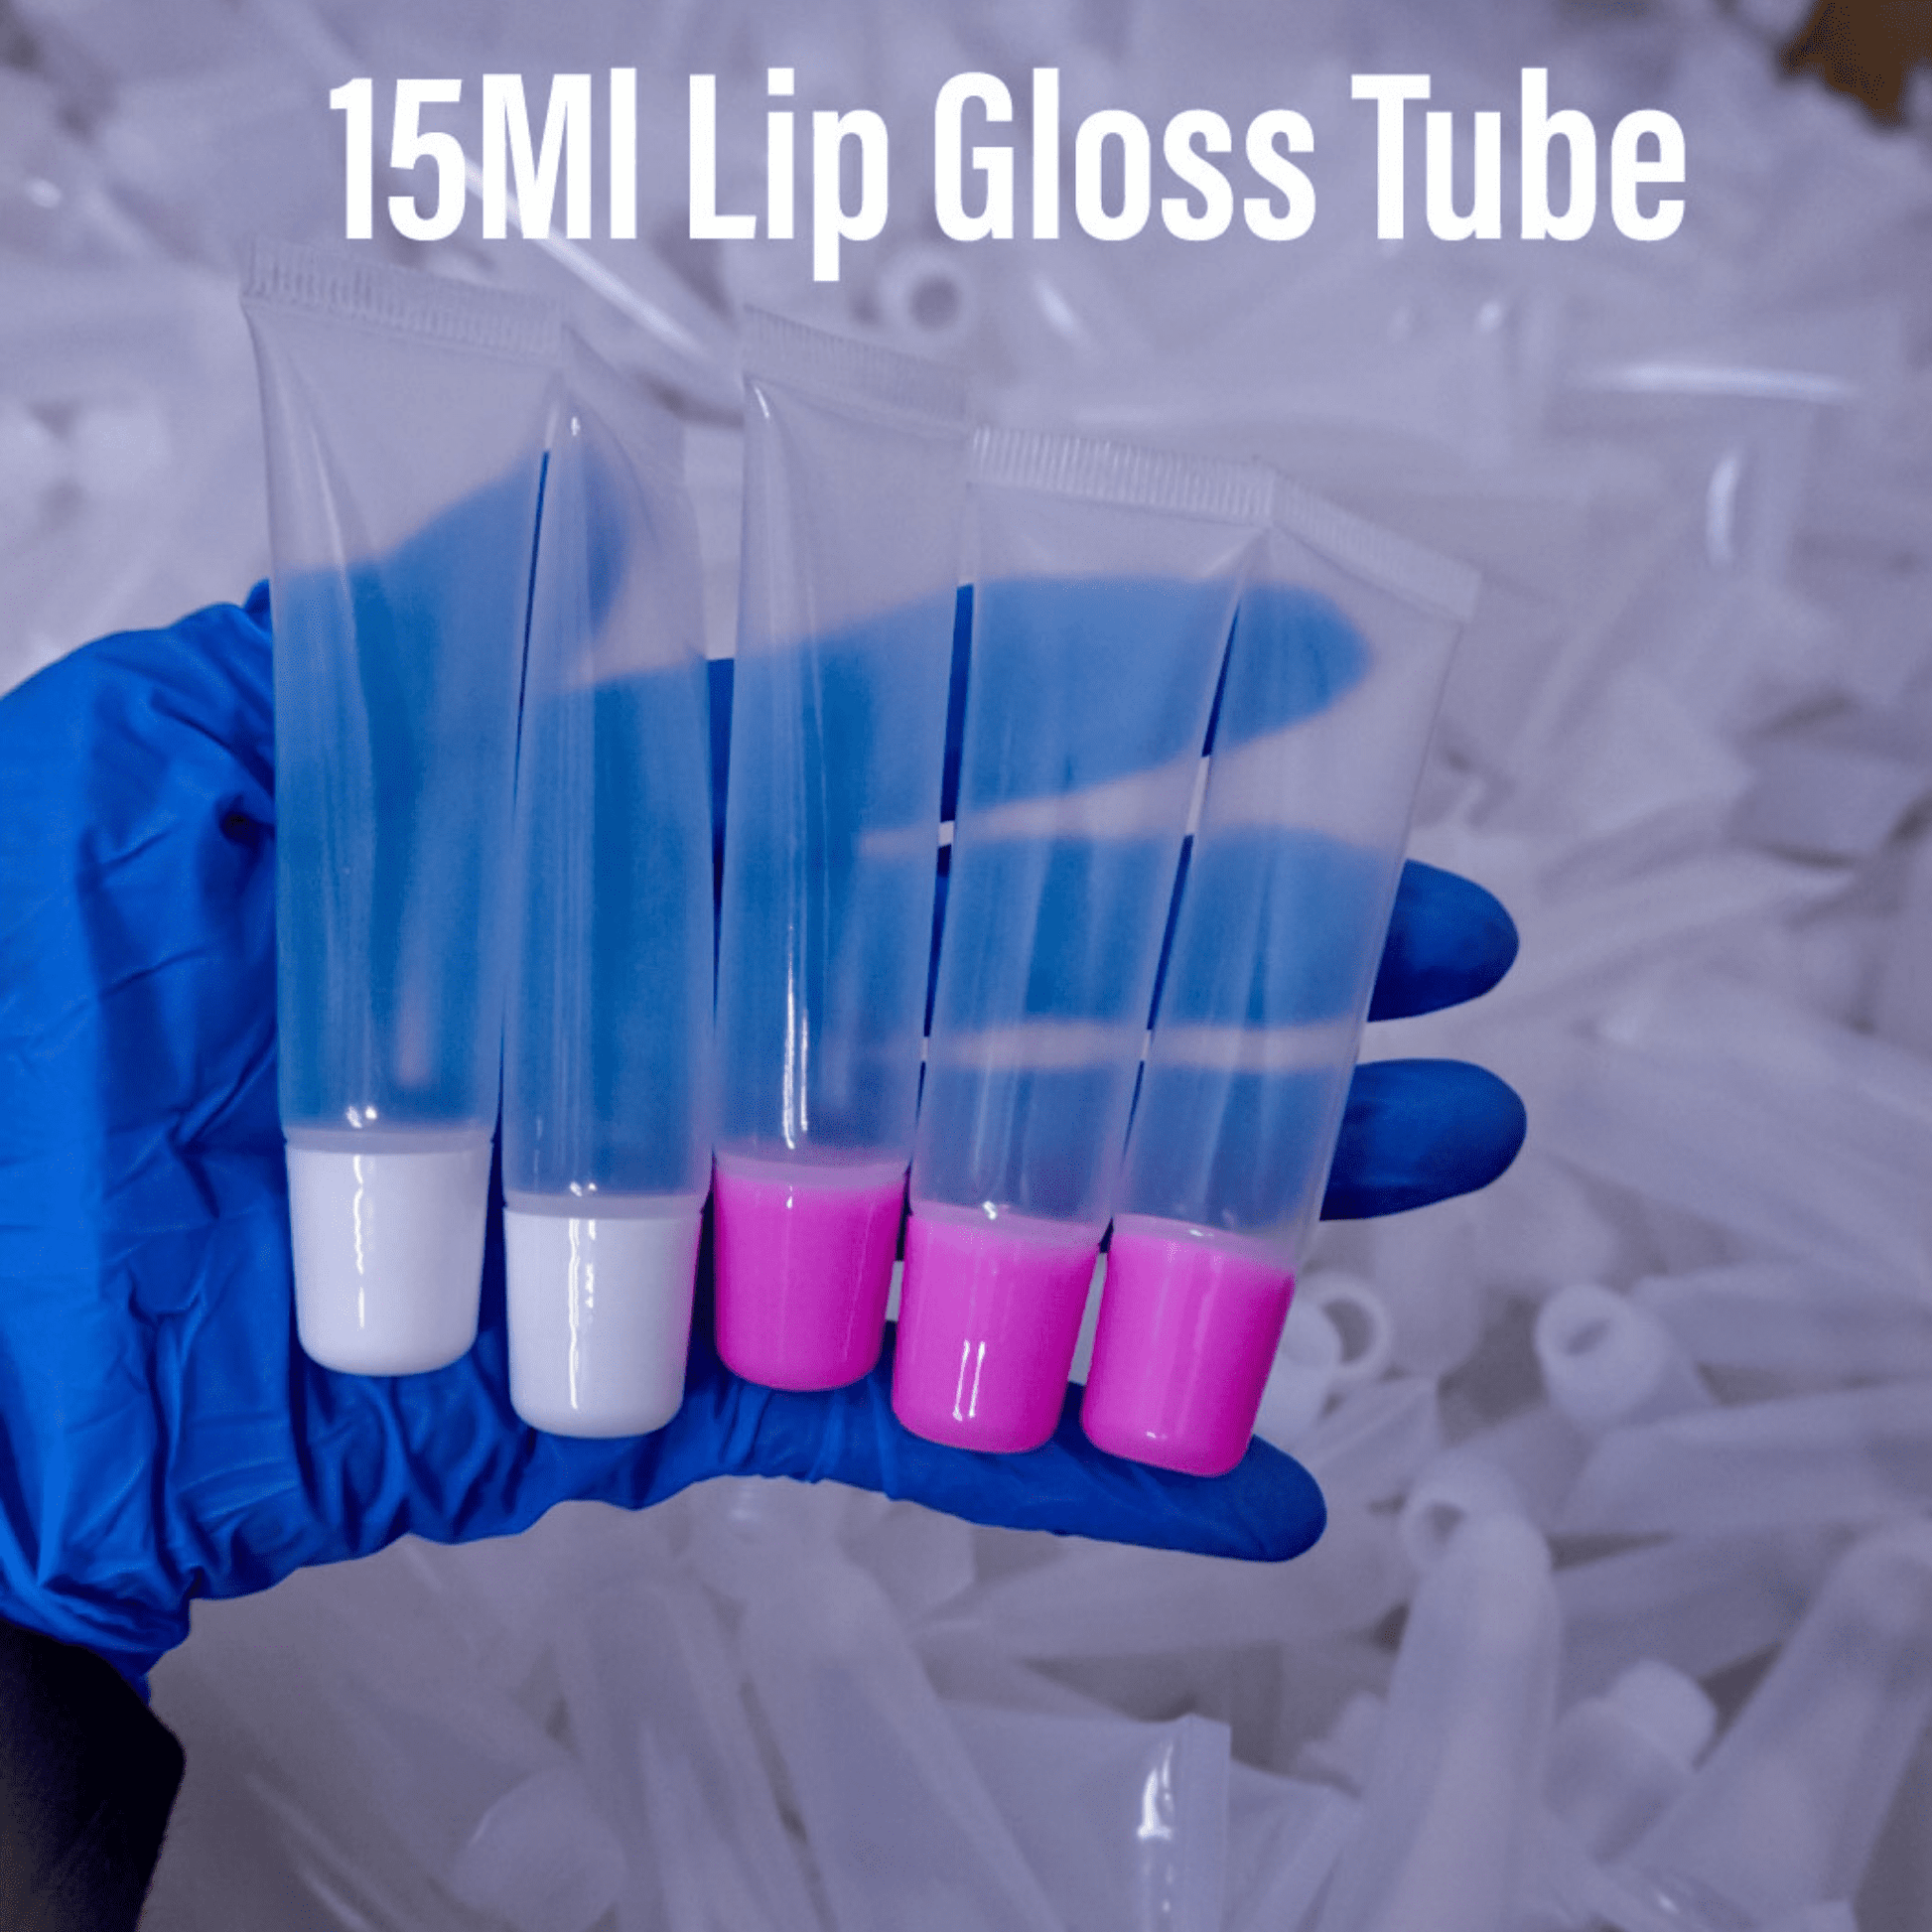 lip gloss tube , bulk wholesale lip gloss squeeze tube 15ml 100 pack .. lip gloss making supplier  vendors, on instagram 